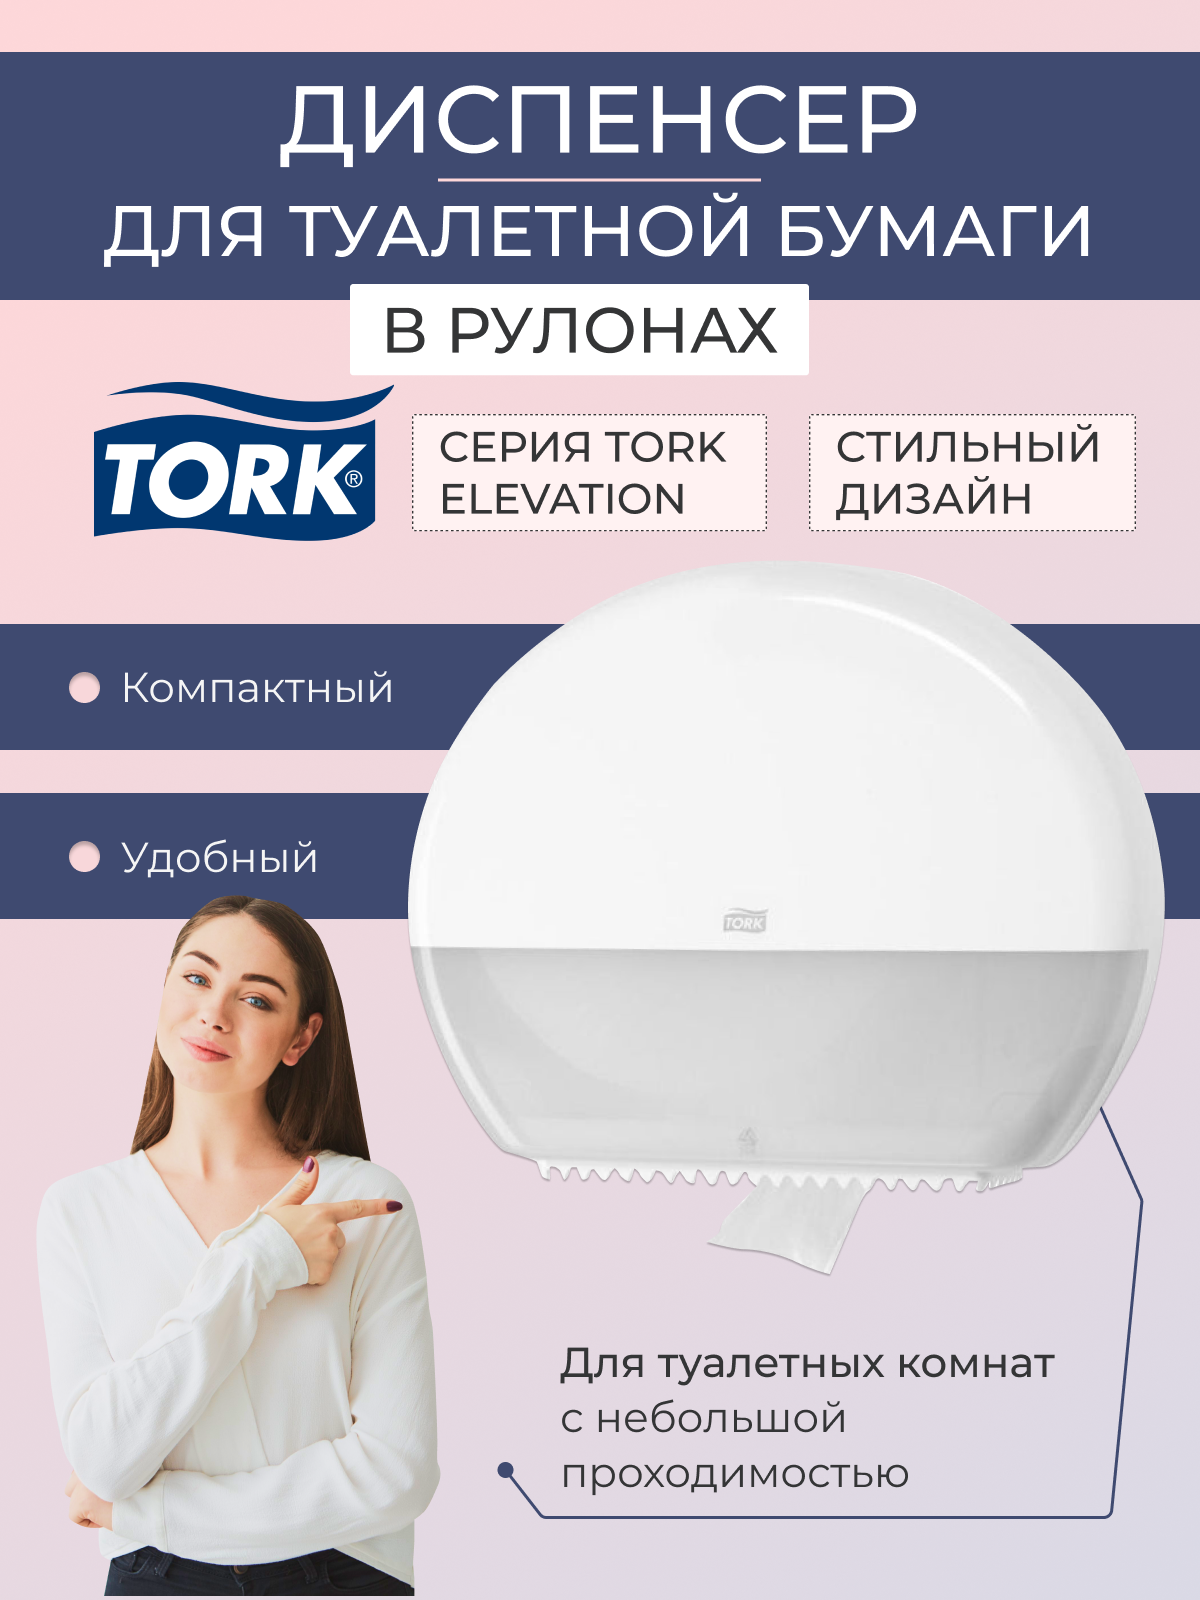 Диспенсер для туалетной бумаги TORK - фото №14